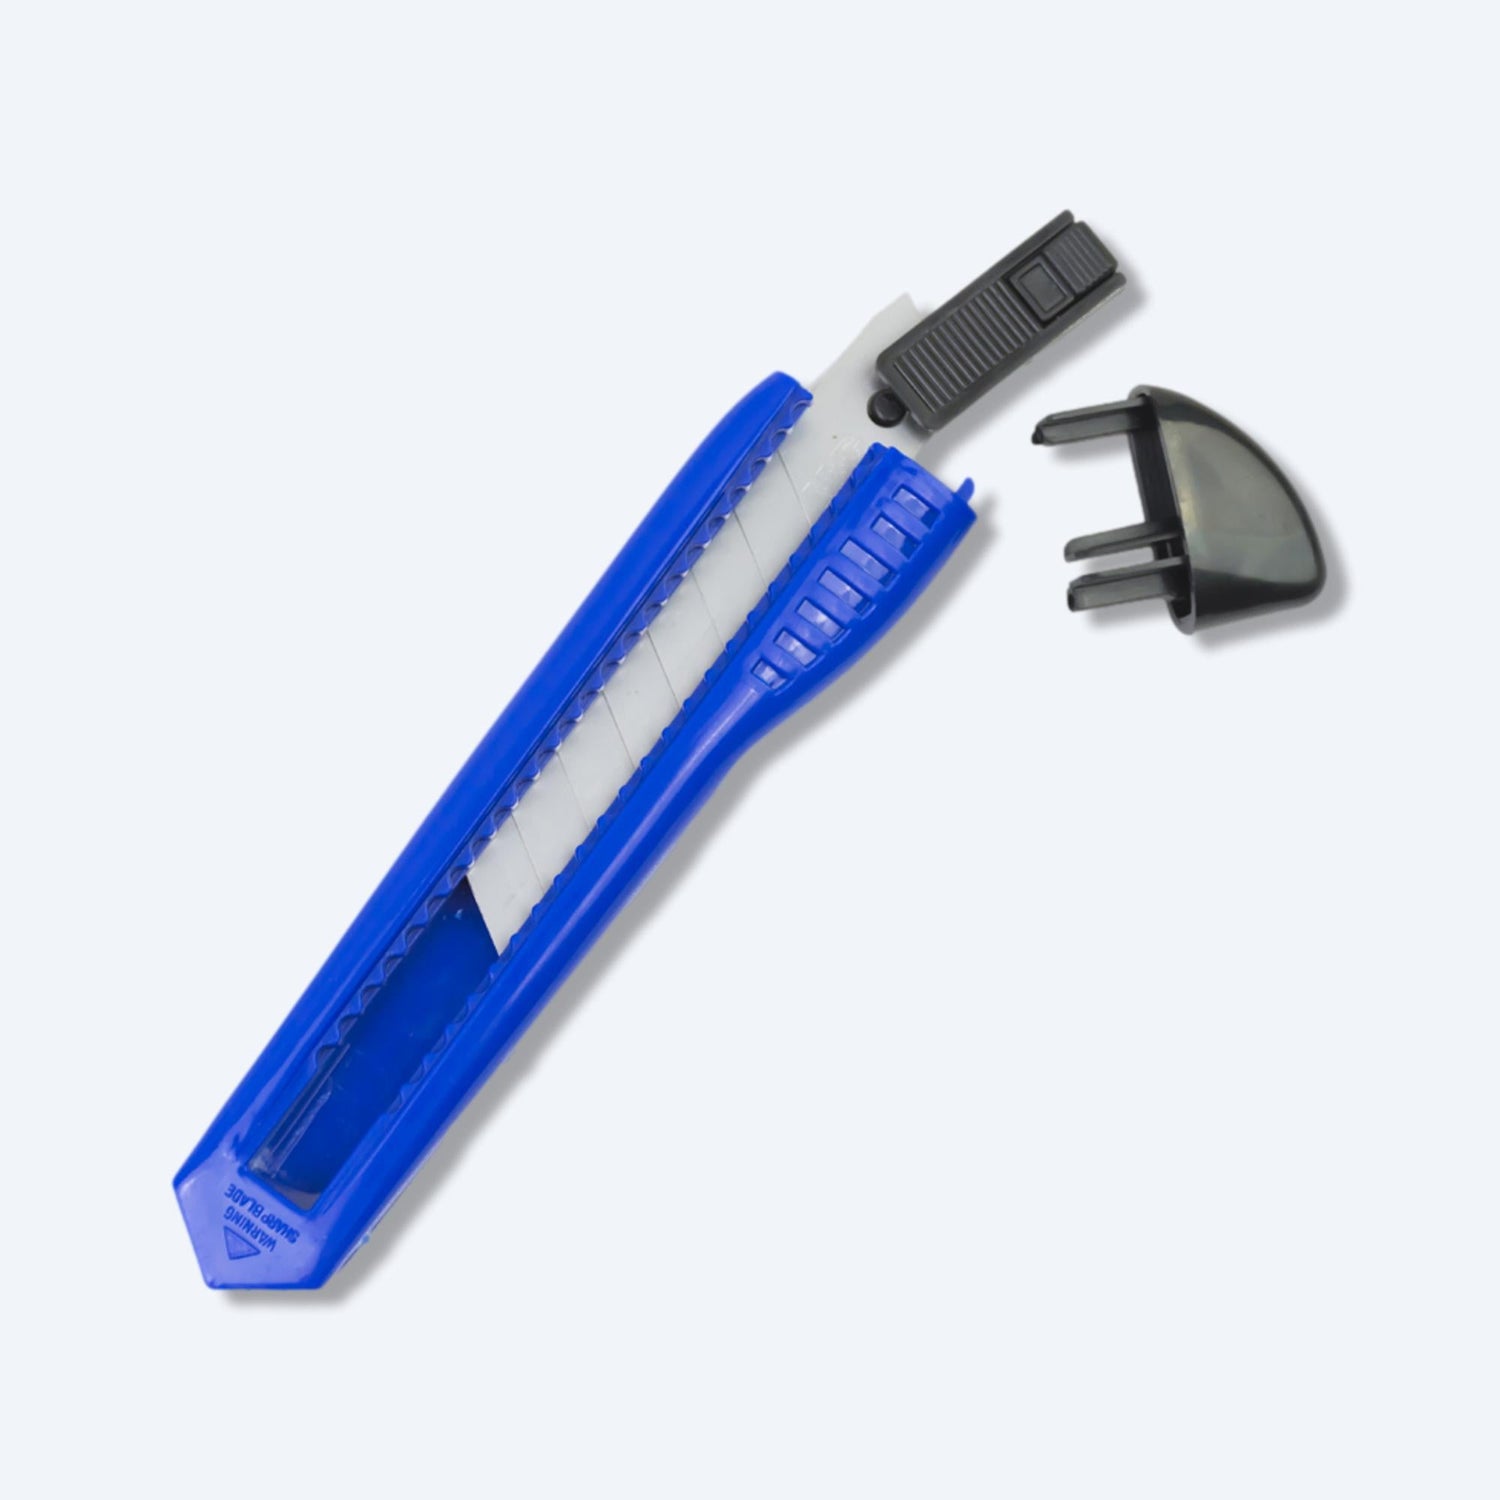 一把藍色的鎅刀，刀片鋒利，可以與剪刀配合使用。